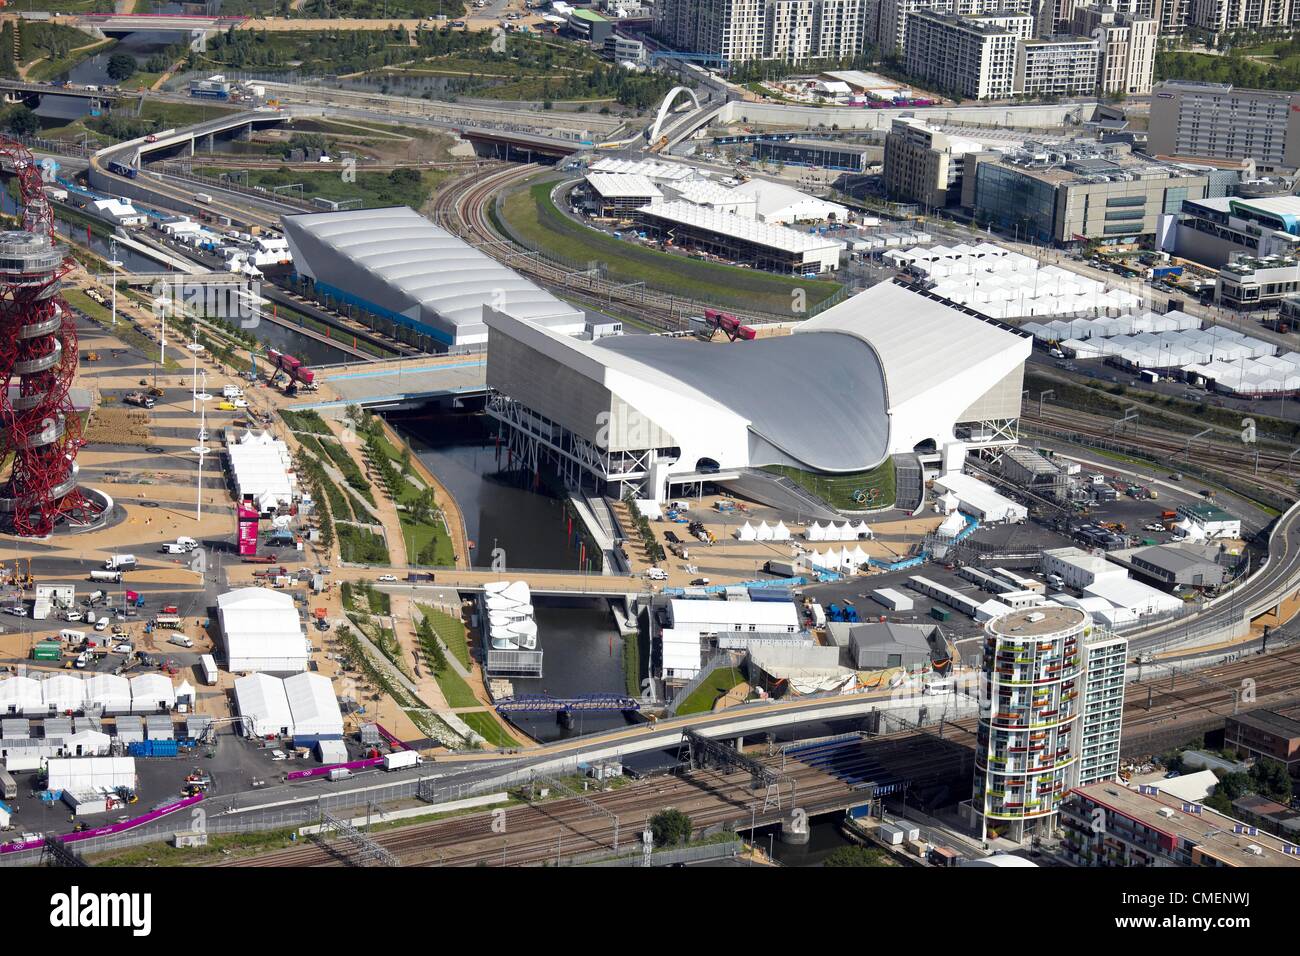 Photographie aérienne au nord-ouest de l'Aquatics center et Watre Polo arena dans le parc olympique, Londres 2012 site olympique de Stratford, London E20 UK Banque D'Images